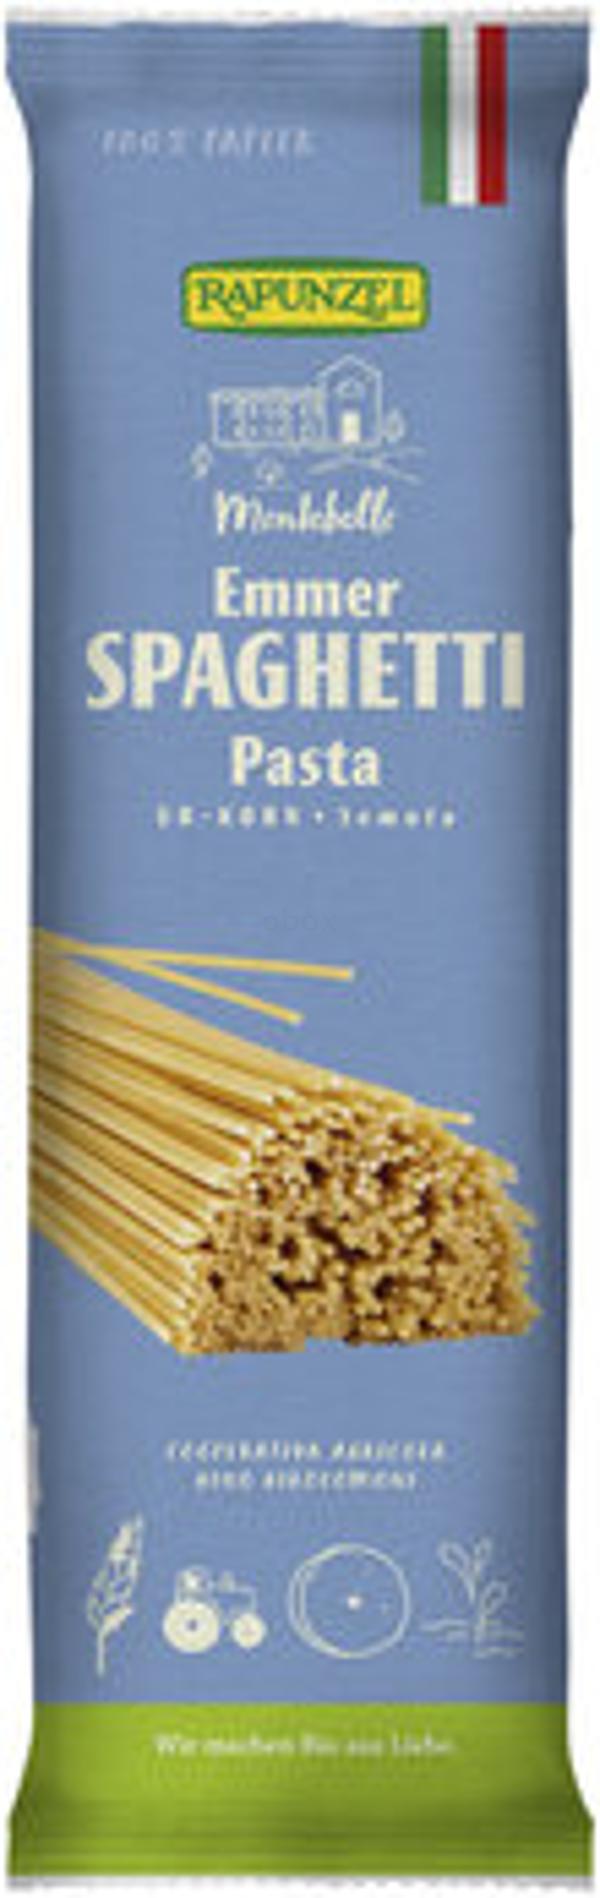 Produktfoto zu Spaghetti Emmer Semola 500g